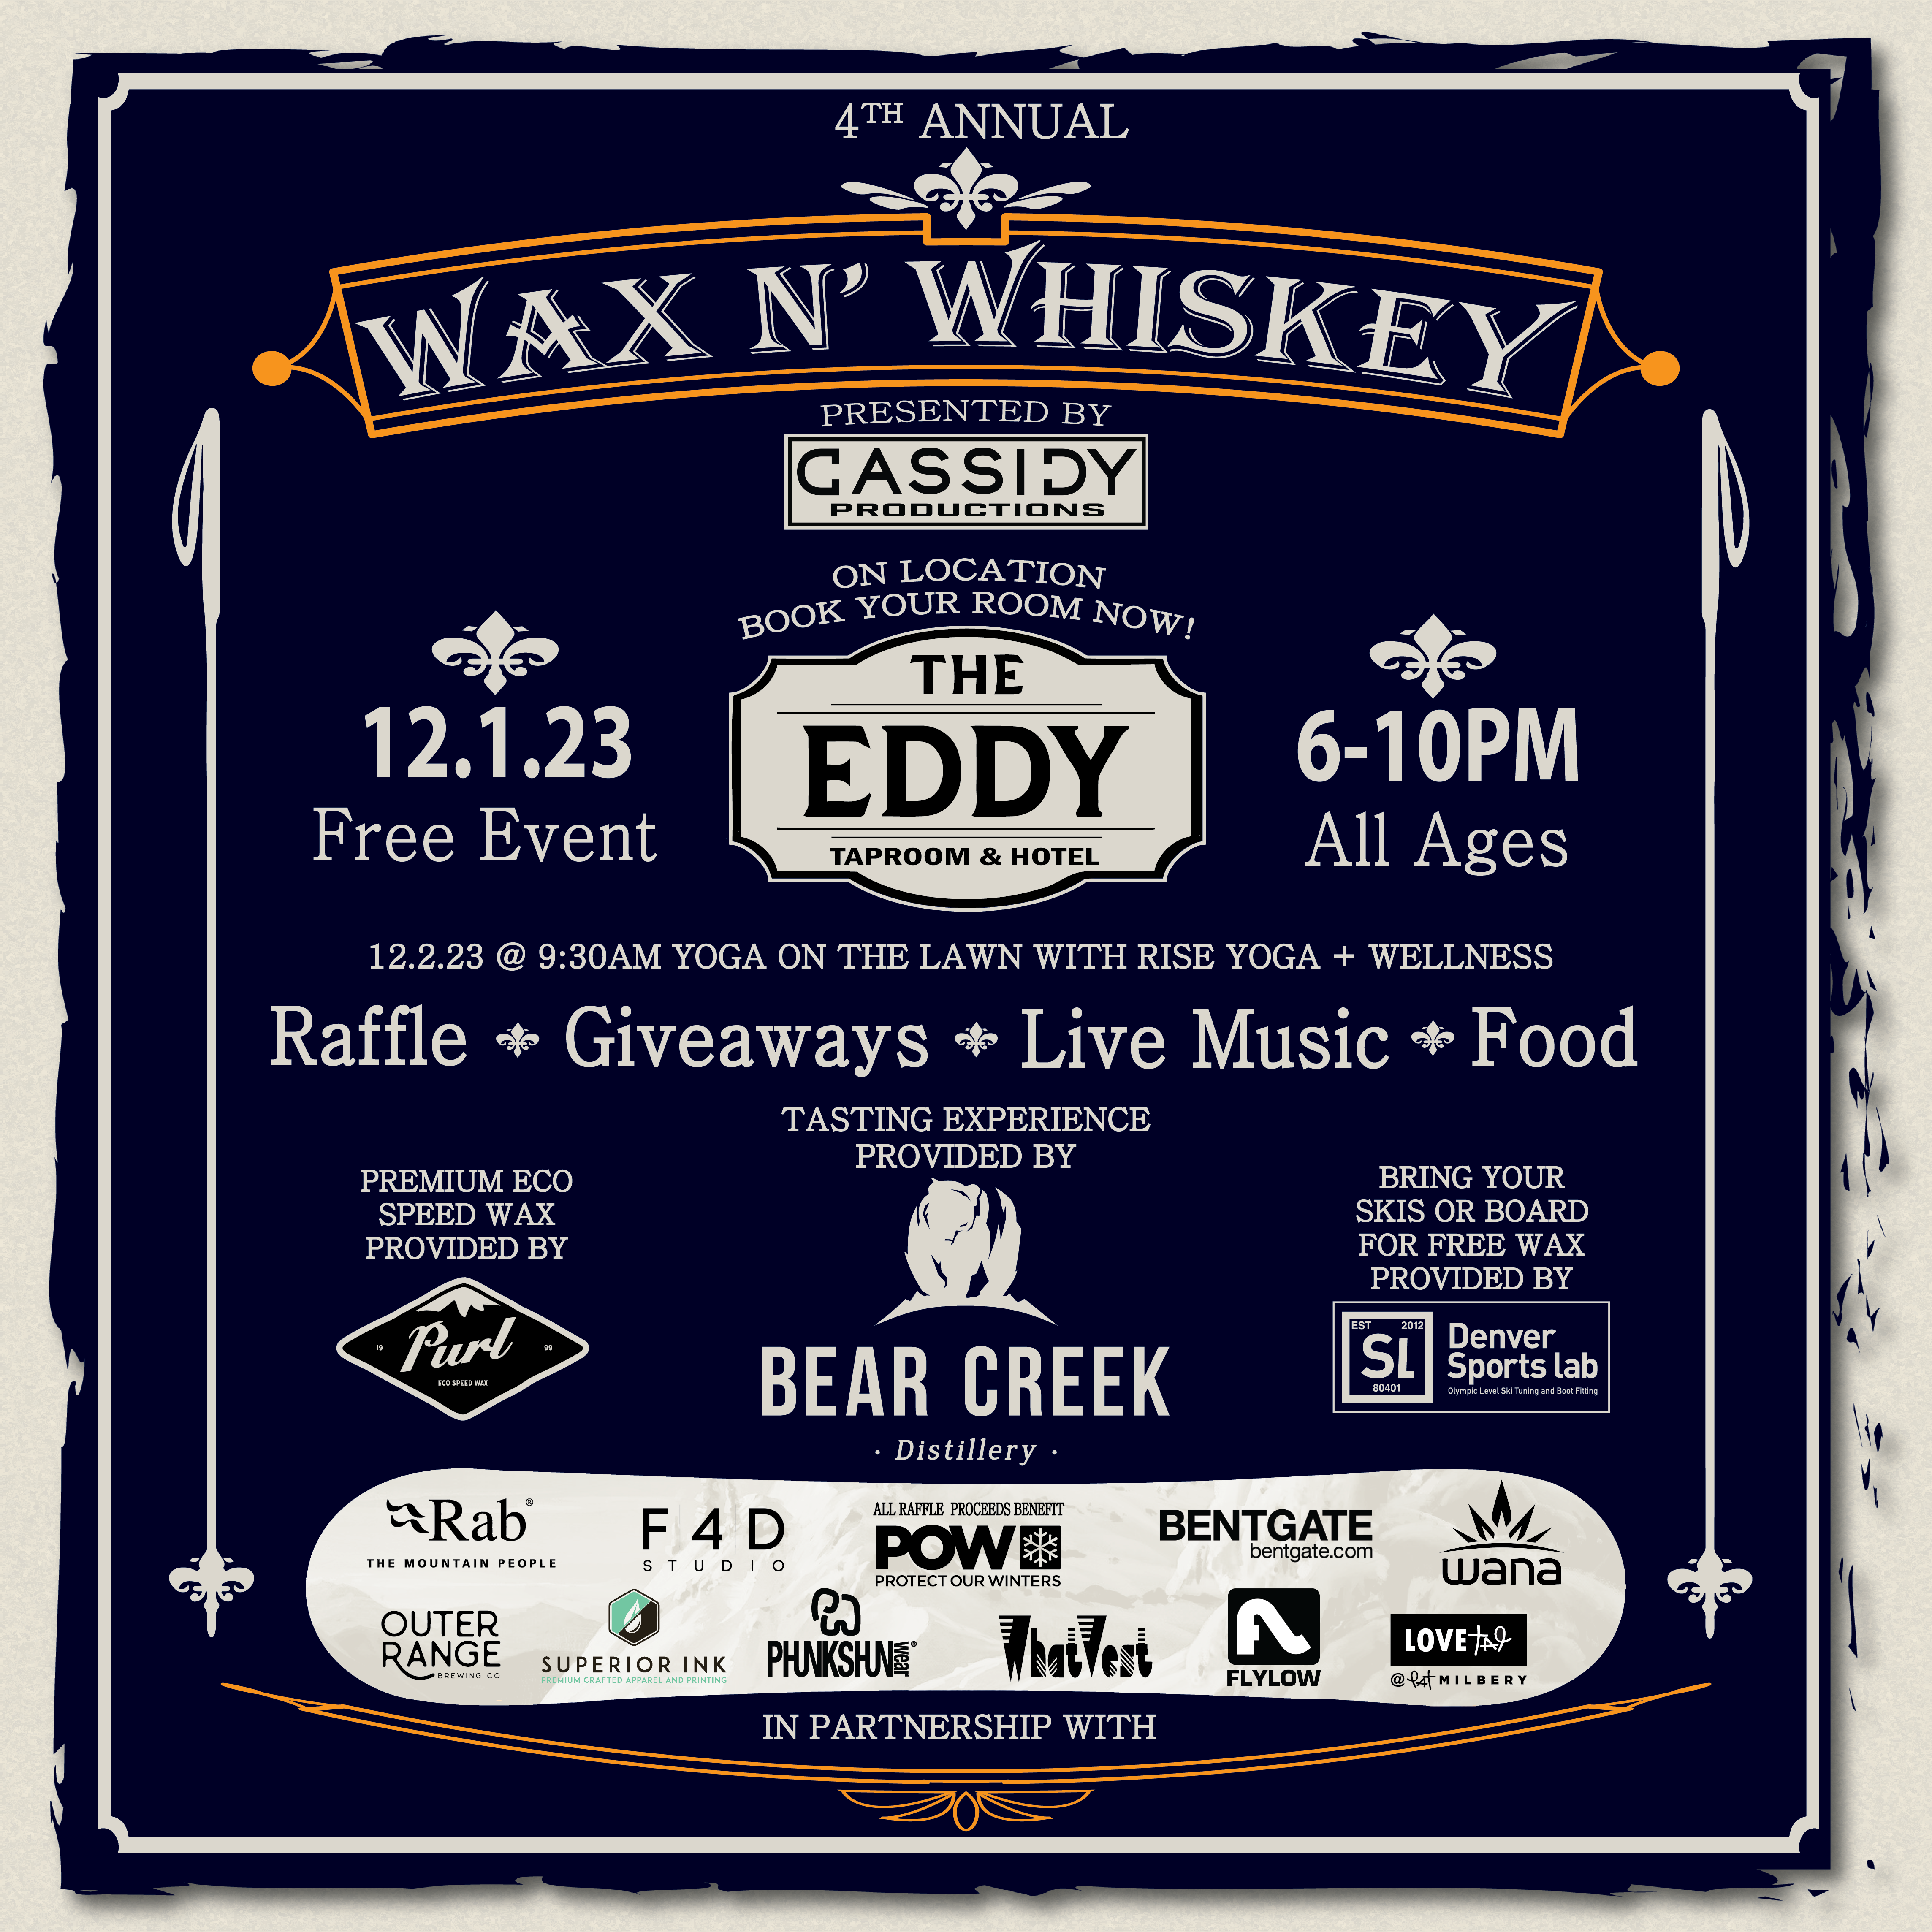 12.1.23 4th Annual Wax N’ Whiskey @ The Eddy Hotel